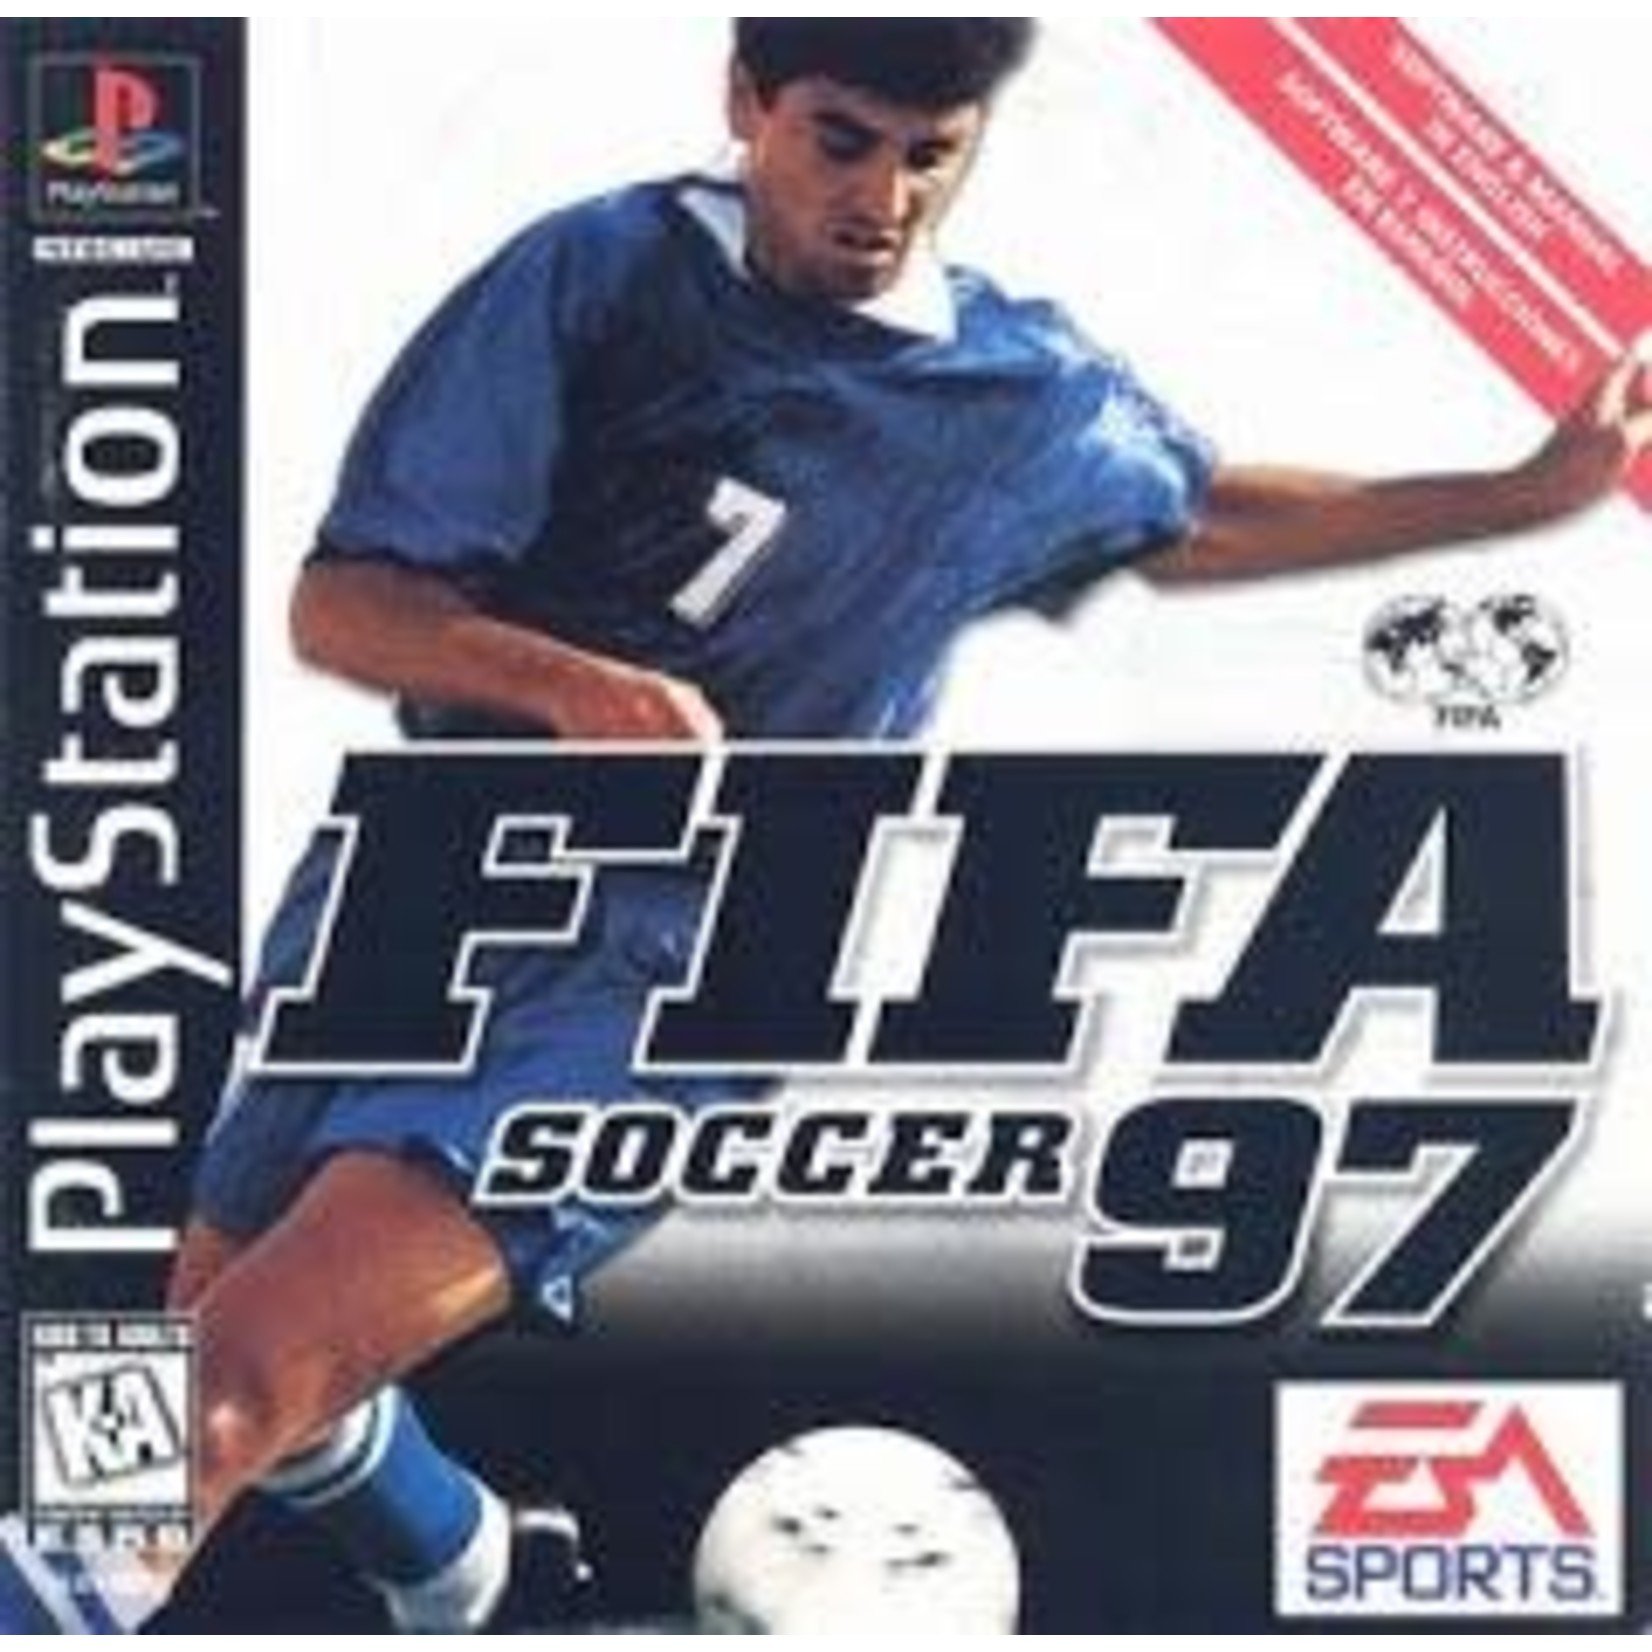 Playstation FIFA Soccer 97 [Playstation]